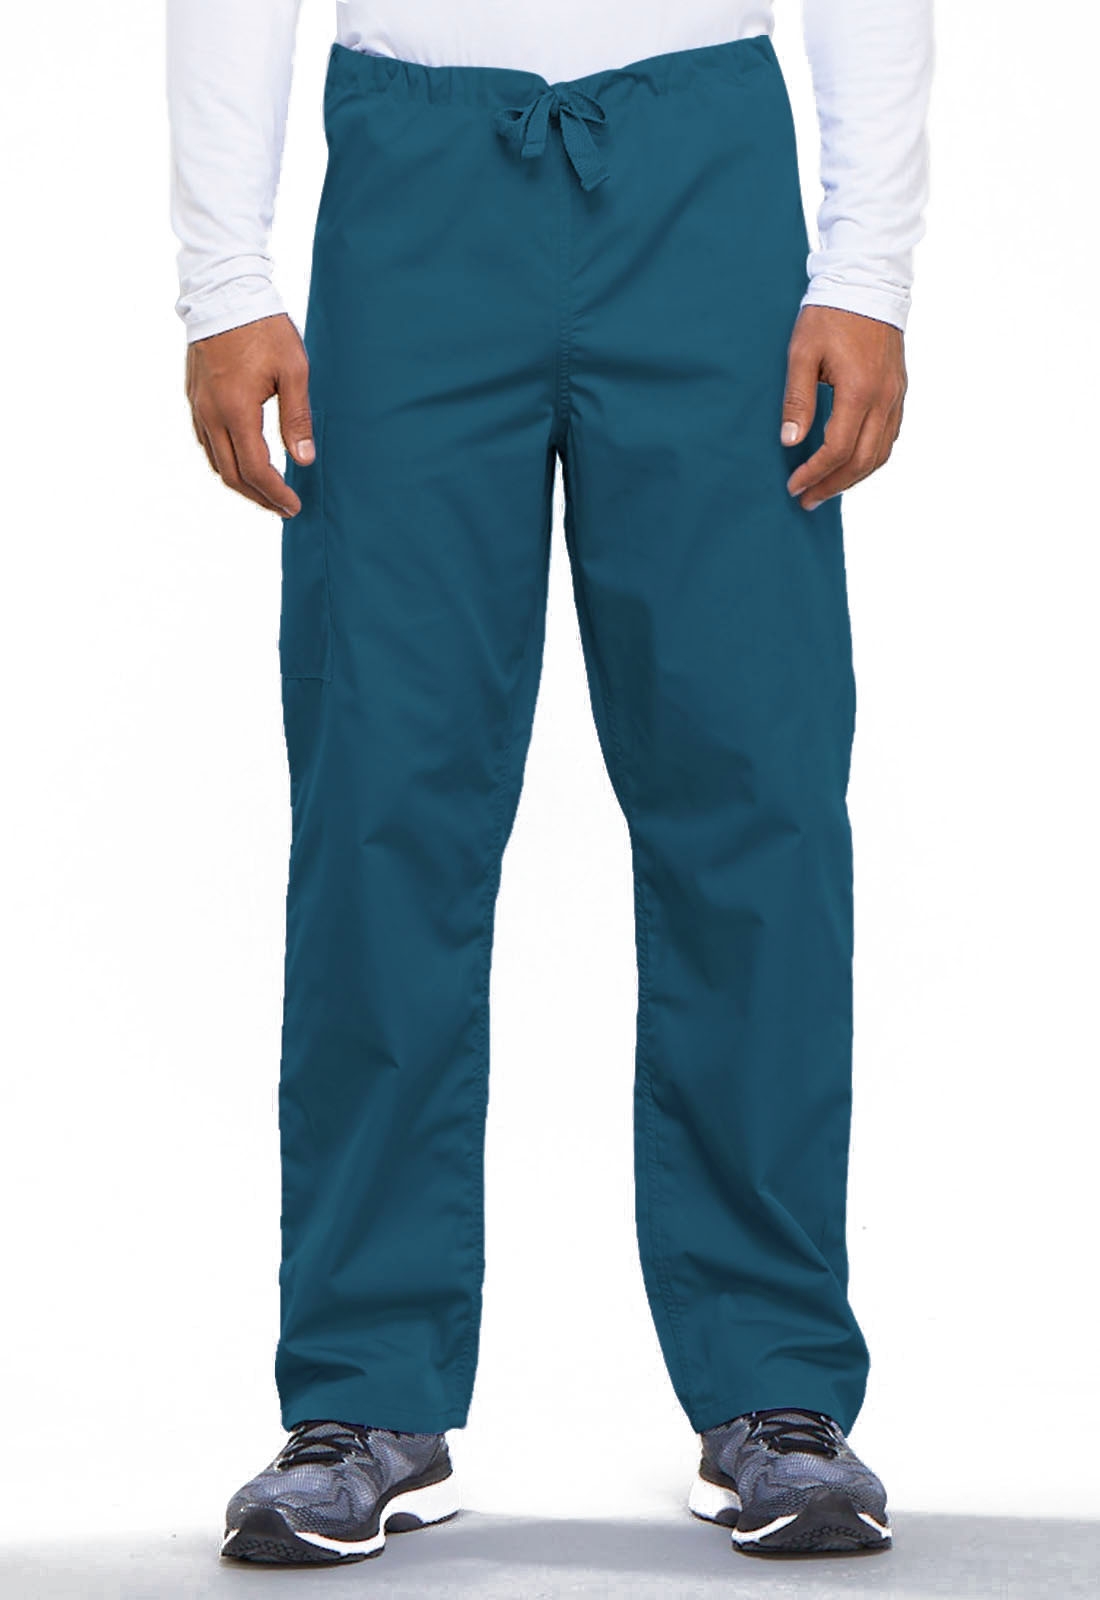 Scrubs Cherokee Workwear Men's Drawstring Cargo Pant Short 4100S TRQW Turquoise 